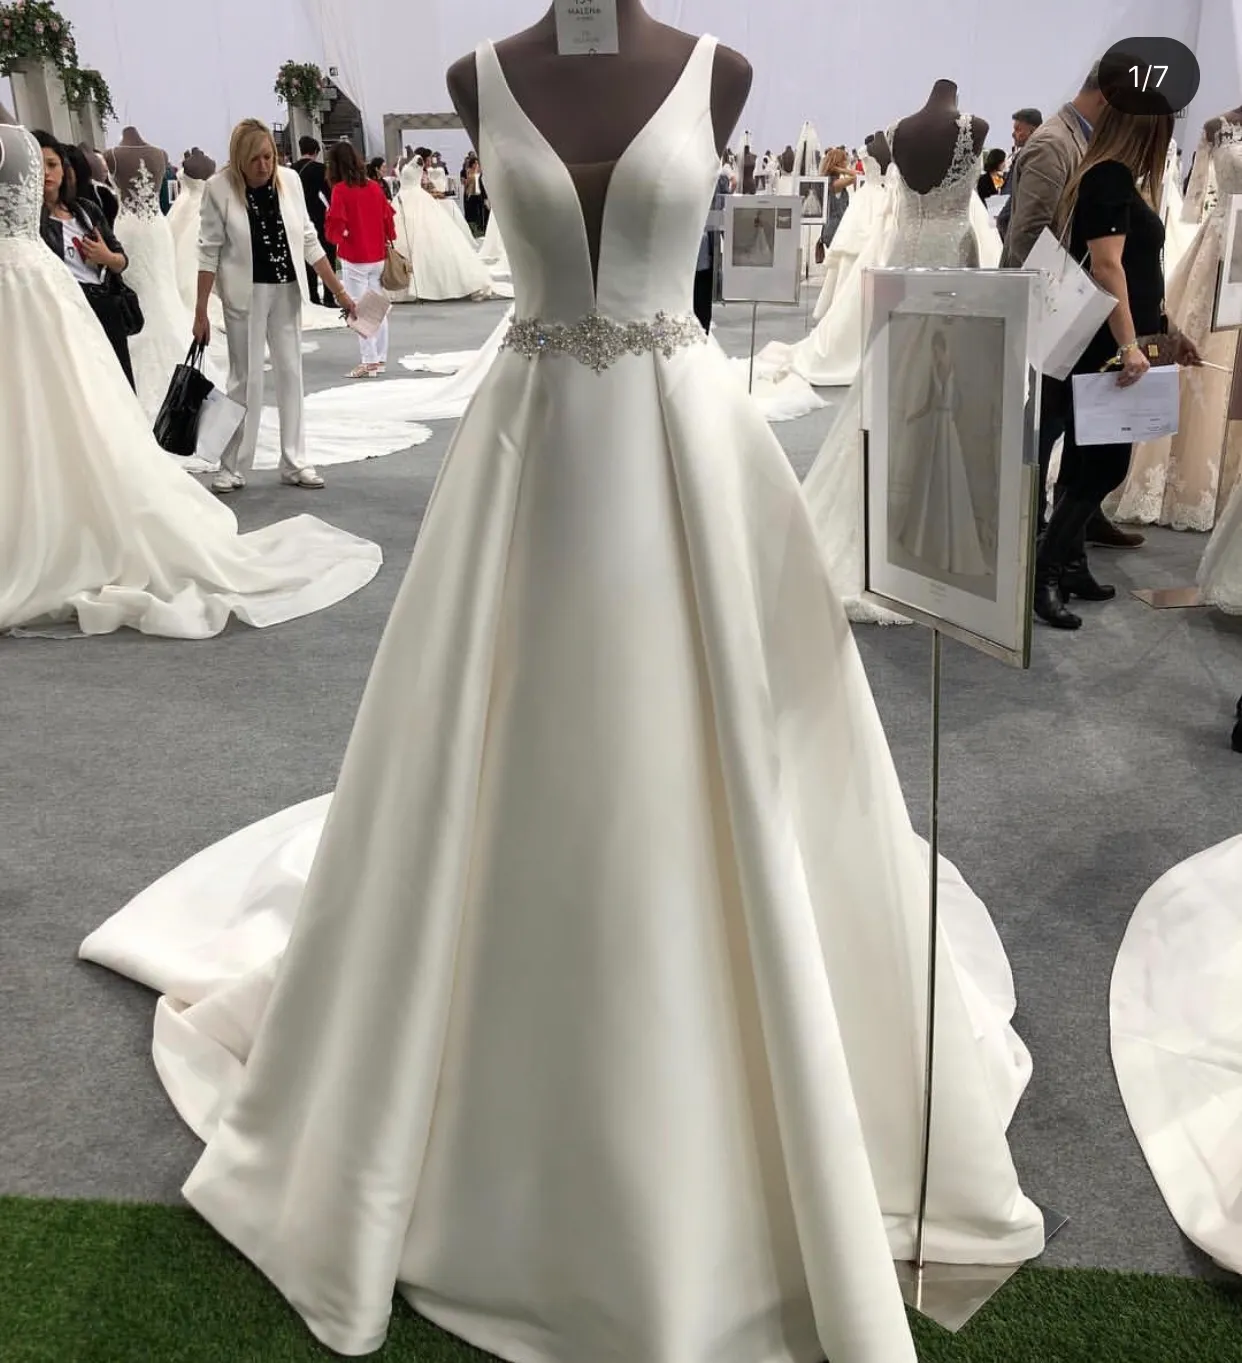 2019 A-line Scollo profondo qualità satinato abito da sposa in rilievo cintura in rilievo avorio bianco 1 metro trian abito da sposa a pieghe a pieghe